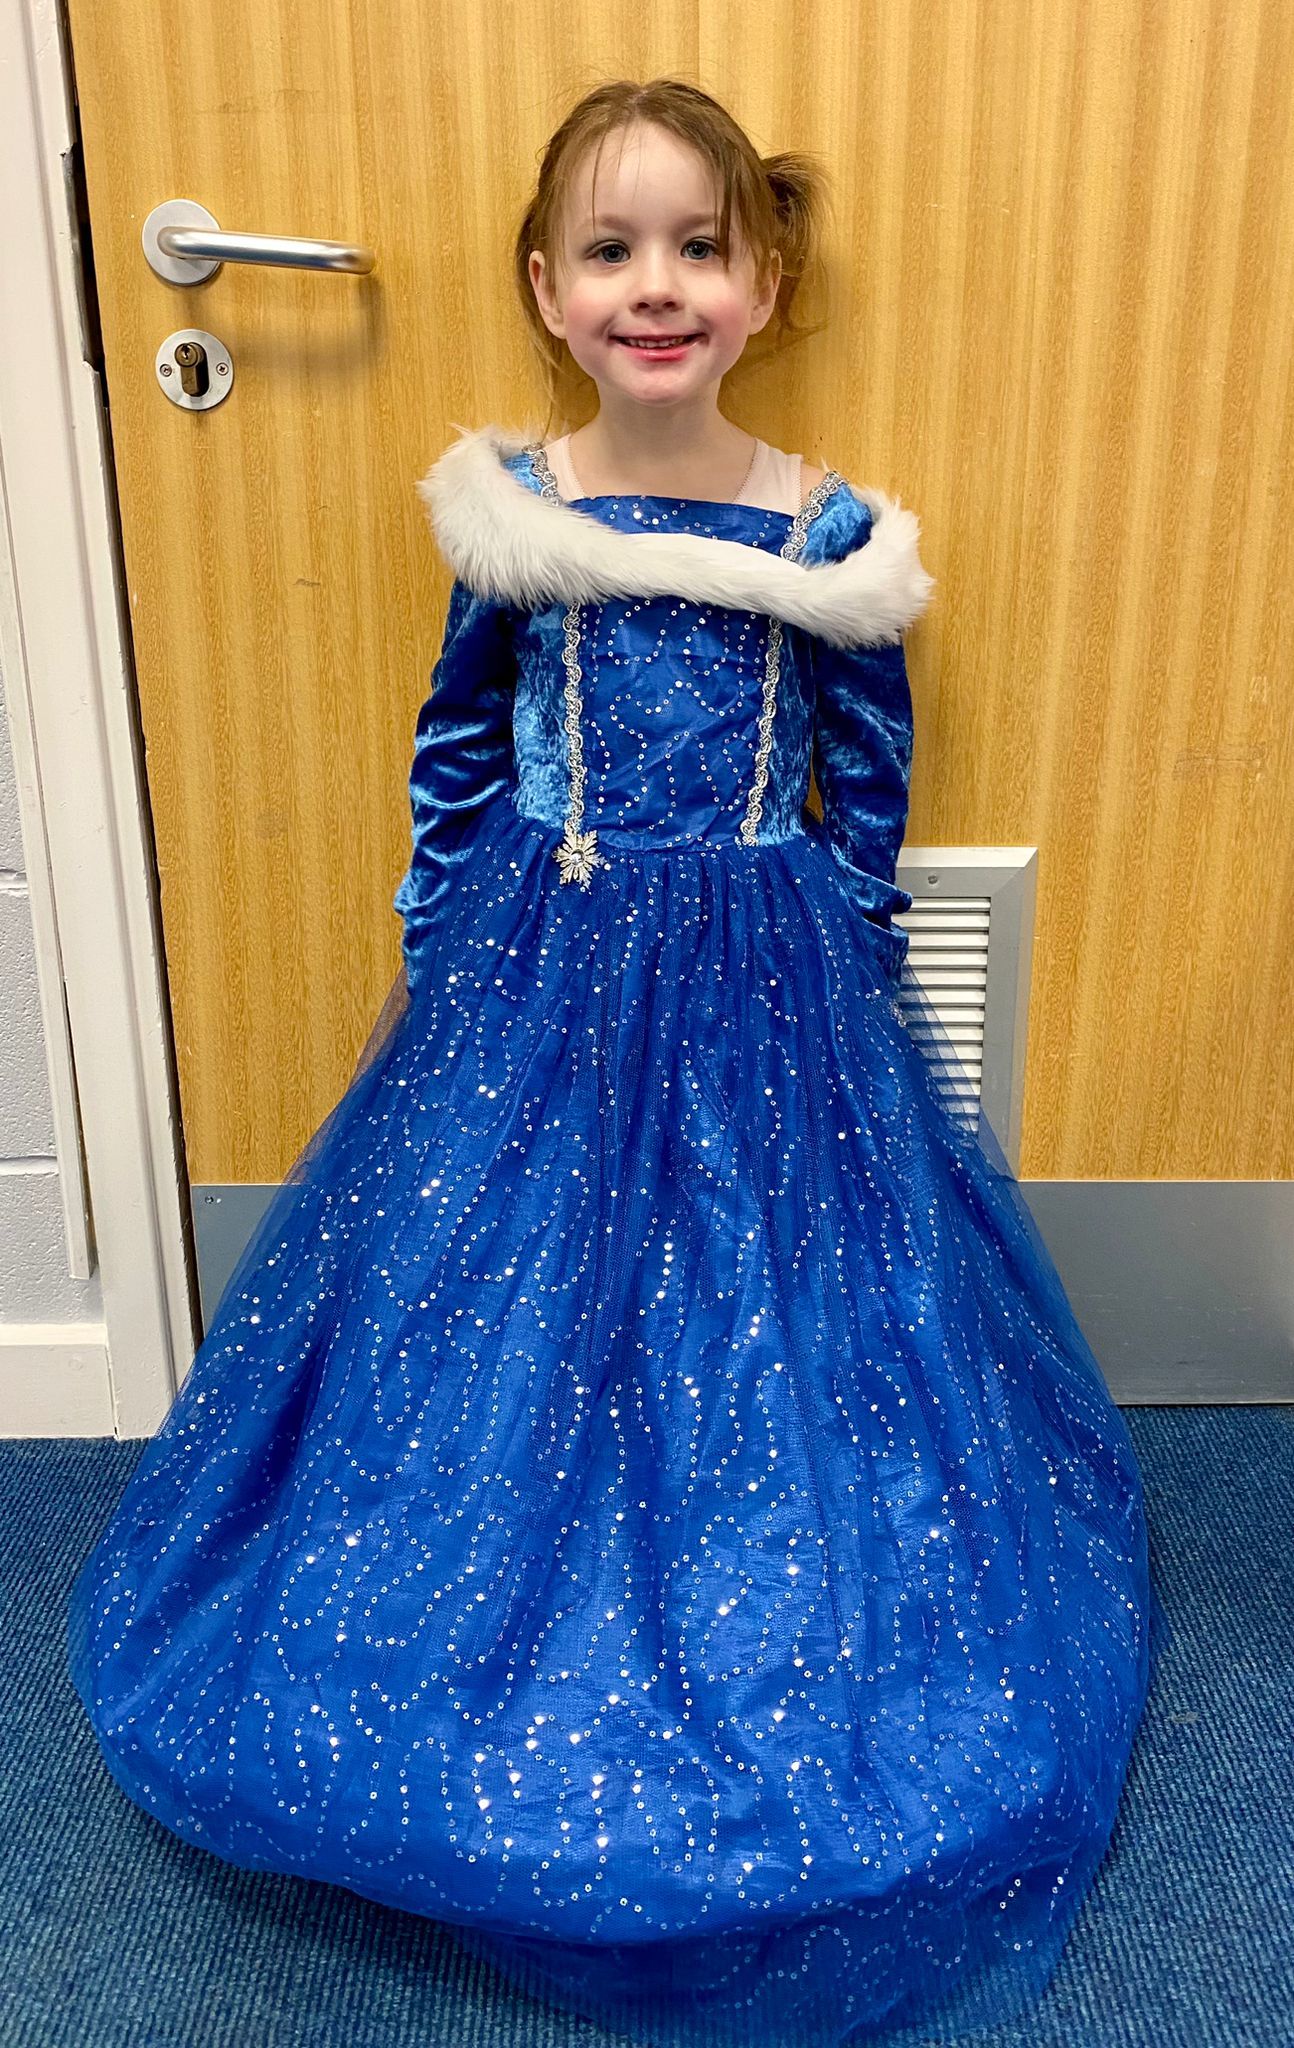 Aubree Dolman in her Frozen dress..